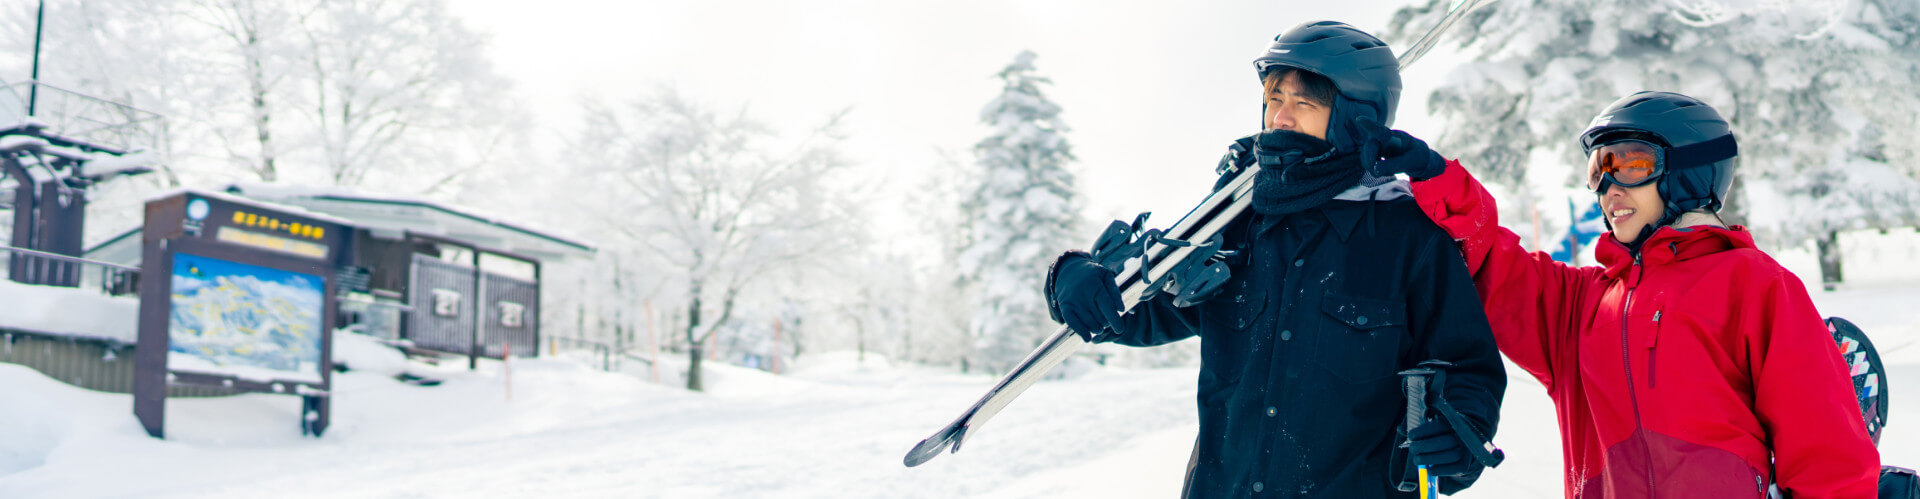 Zwei Personen geniessen die winterlichen Skipisten im Schnee mit VELO-Nikotinbeuteln.